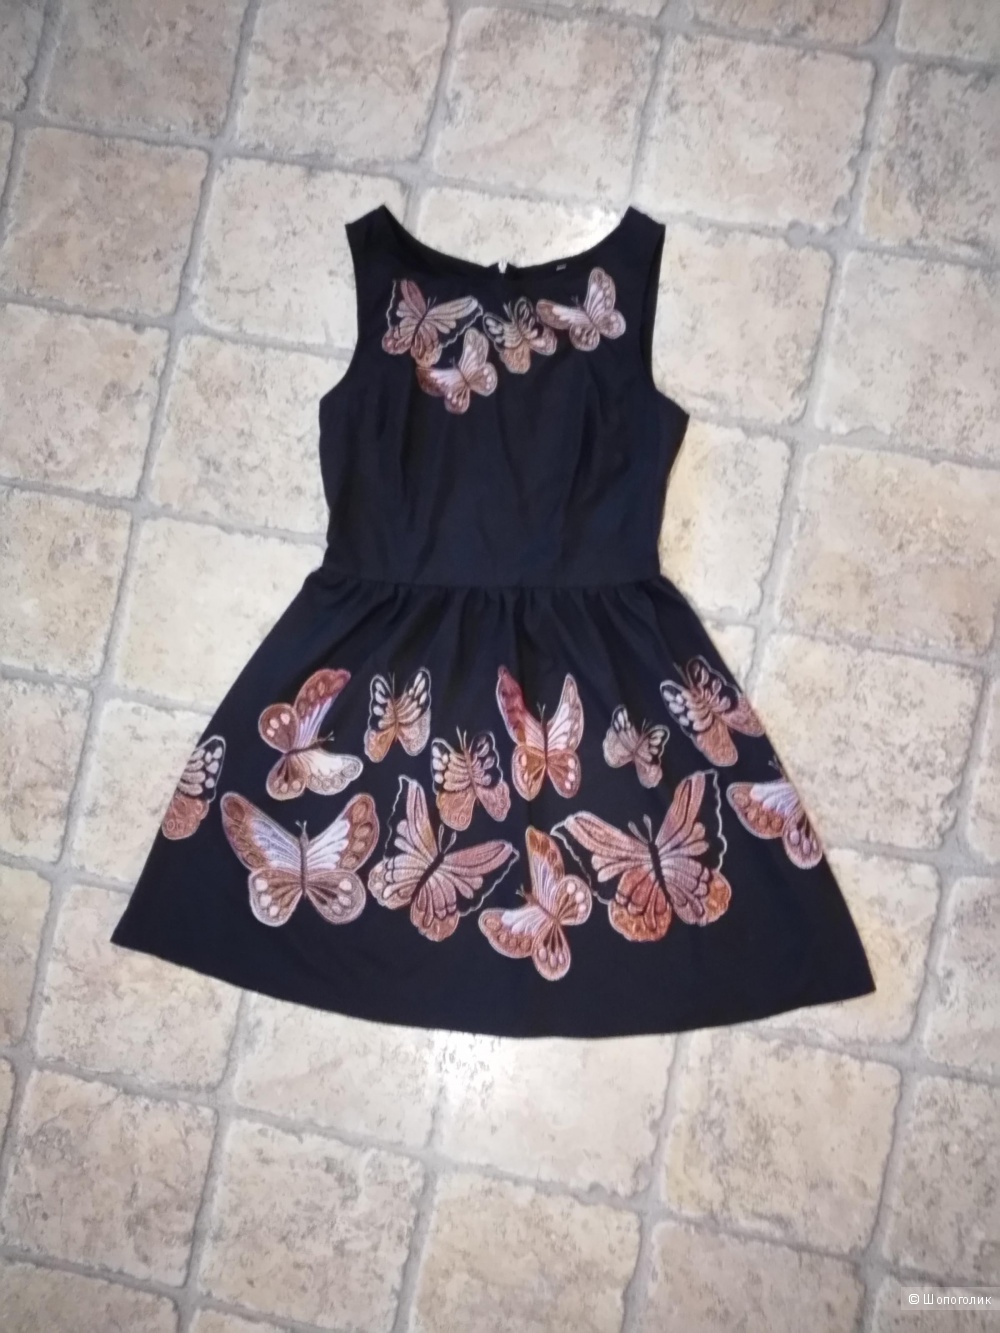 Лёгкое летнее платье, чёрного цвета с бабочками, размера М.